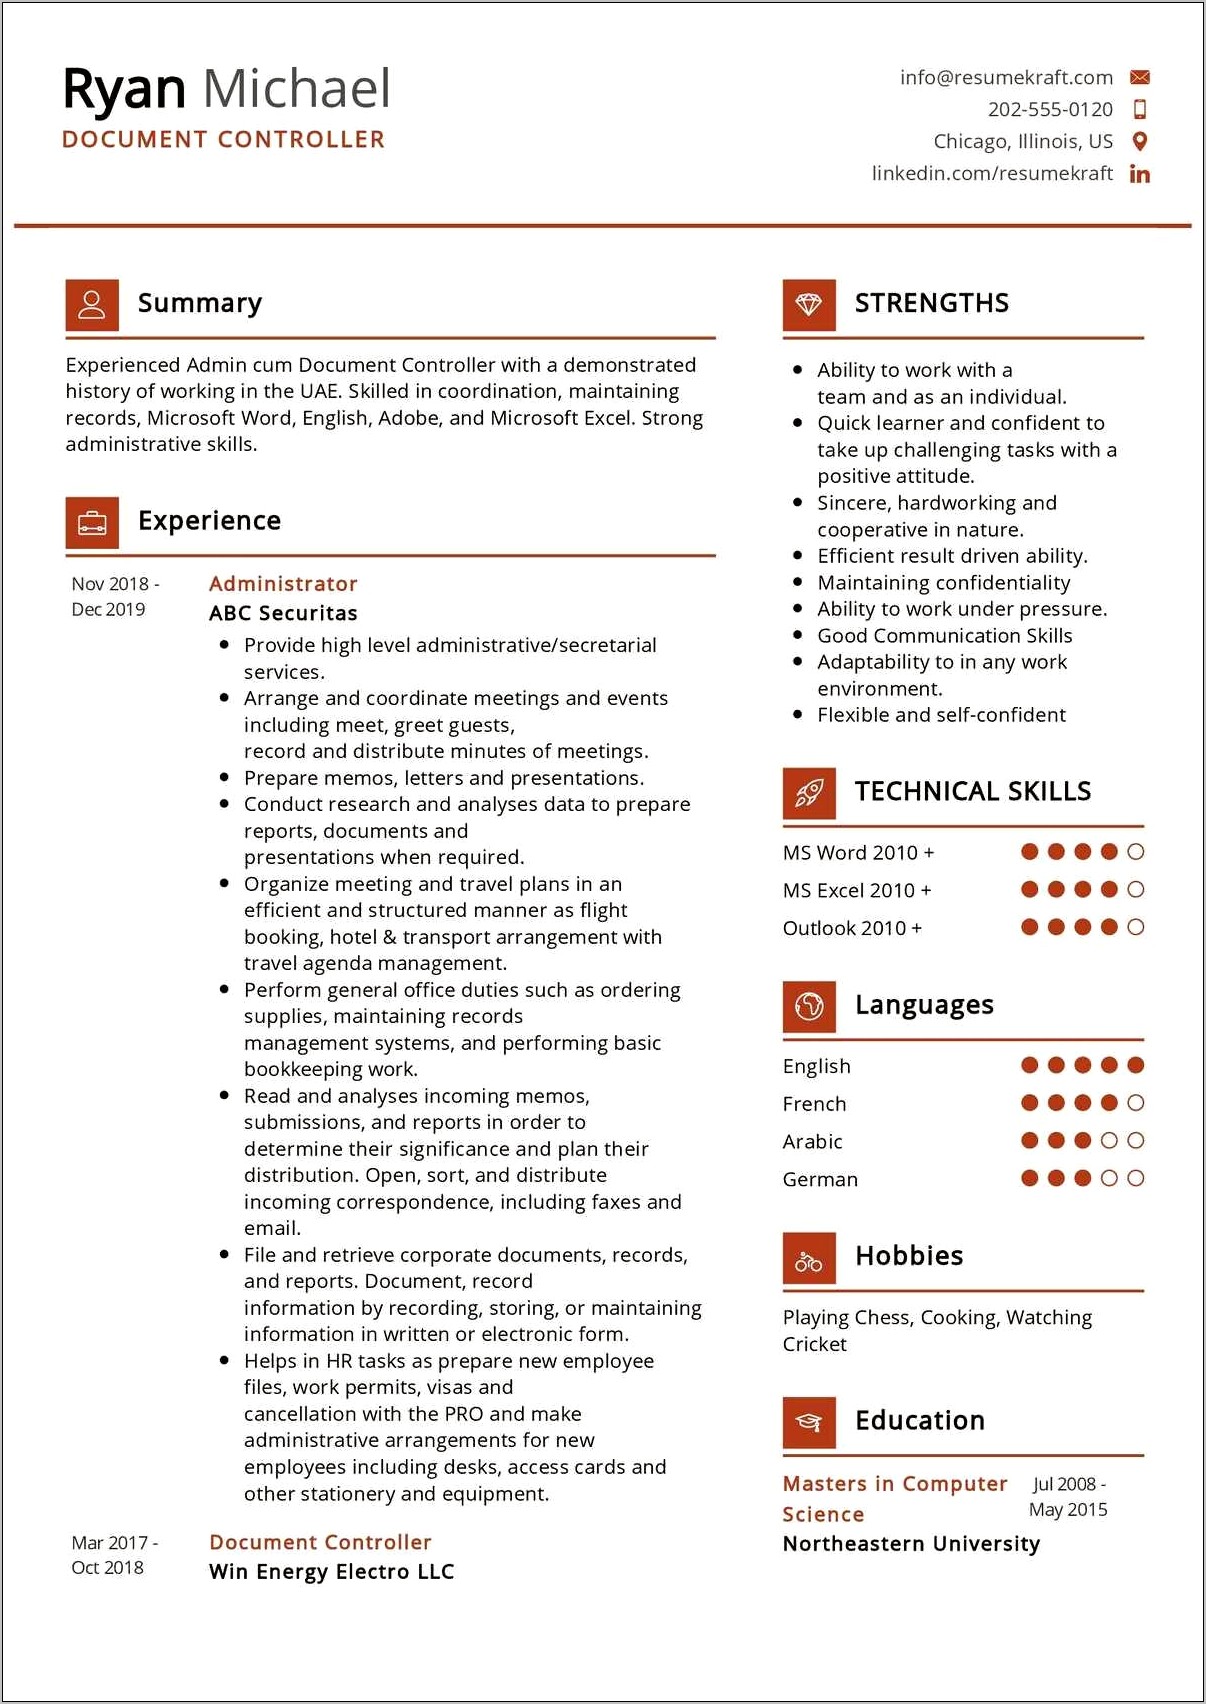 Retail Controller Job Description For Resume